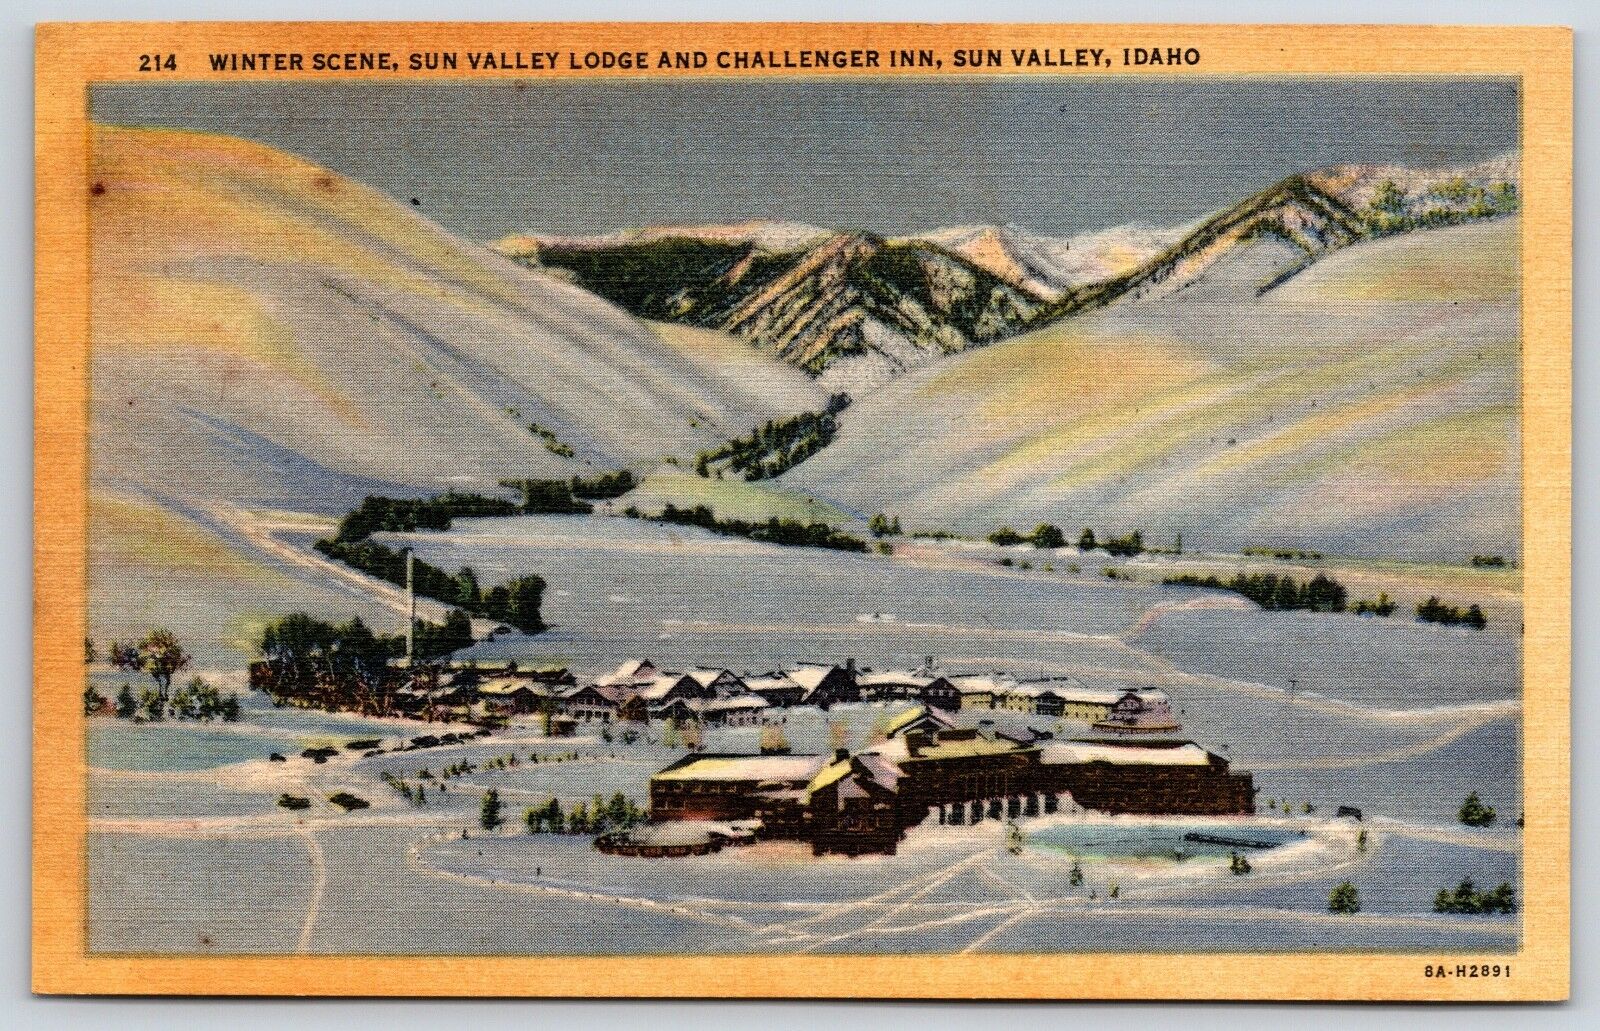 Winter Scene At Sun Valley Lodge Challenger Inn Sun Valley, Idaho Linen Postcard